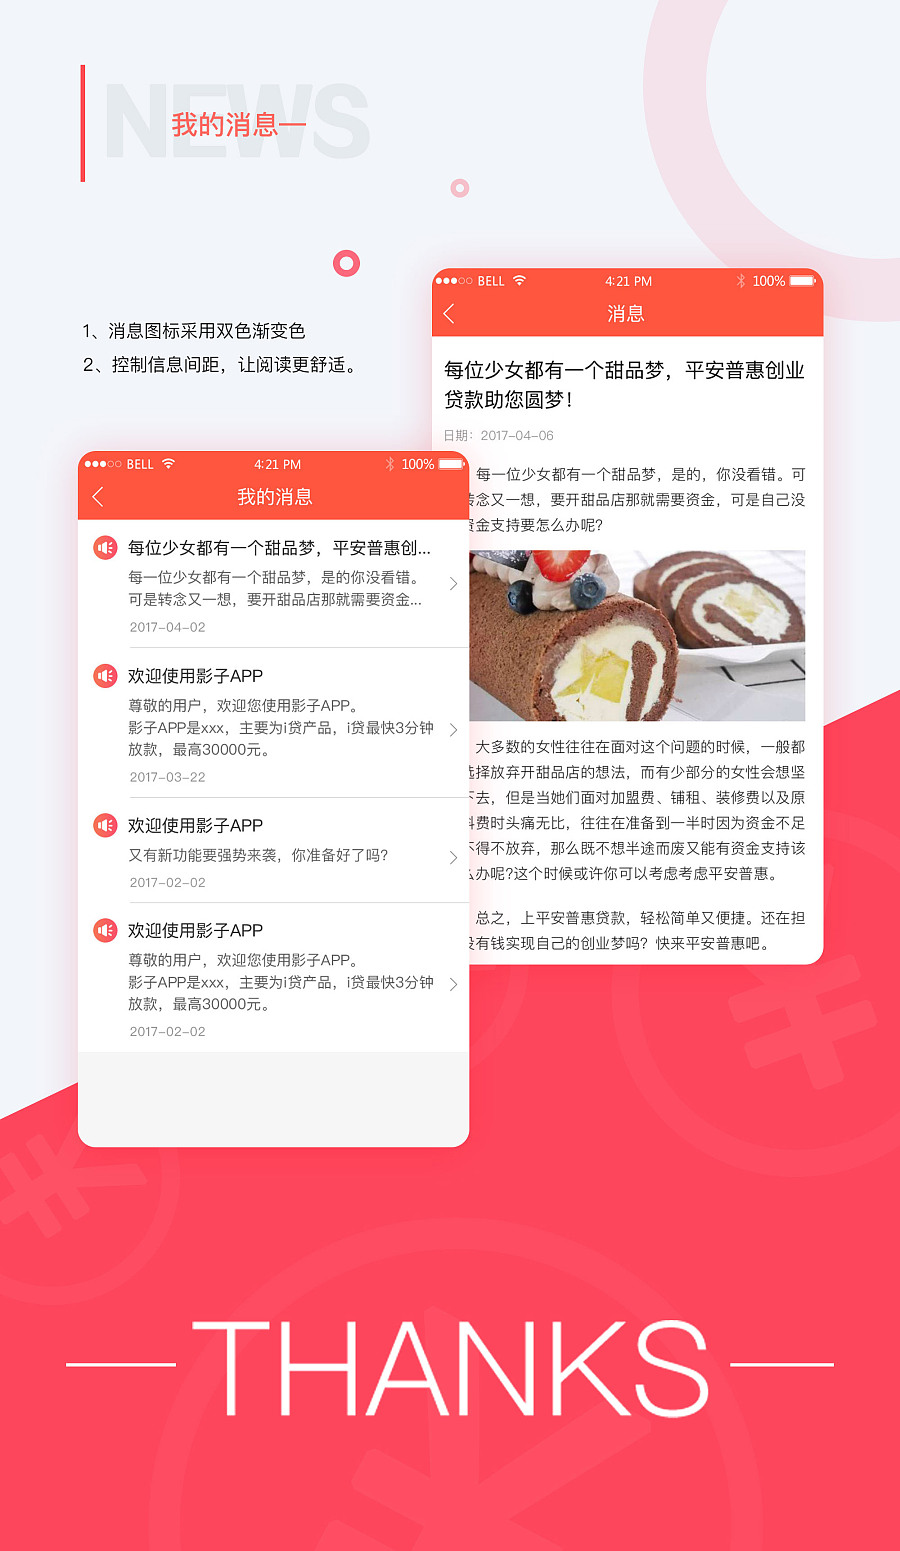 平安普惠i贷影子app|APP界面|UI|Jenny0722 - 原